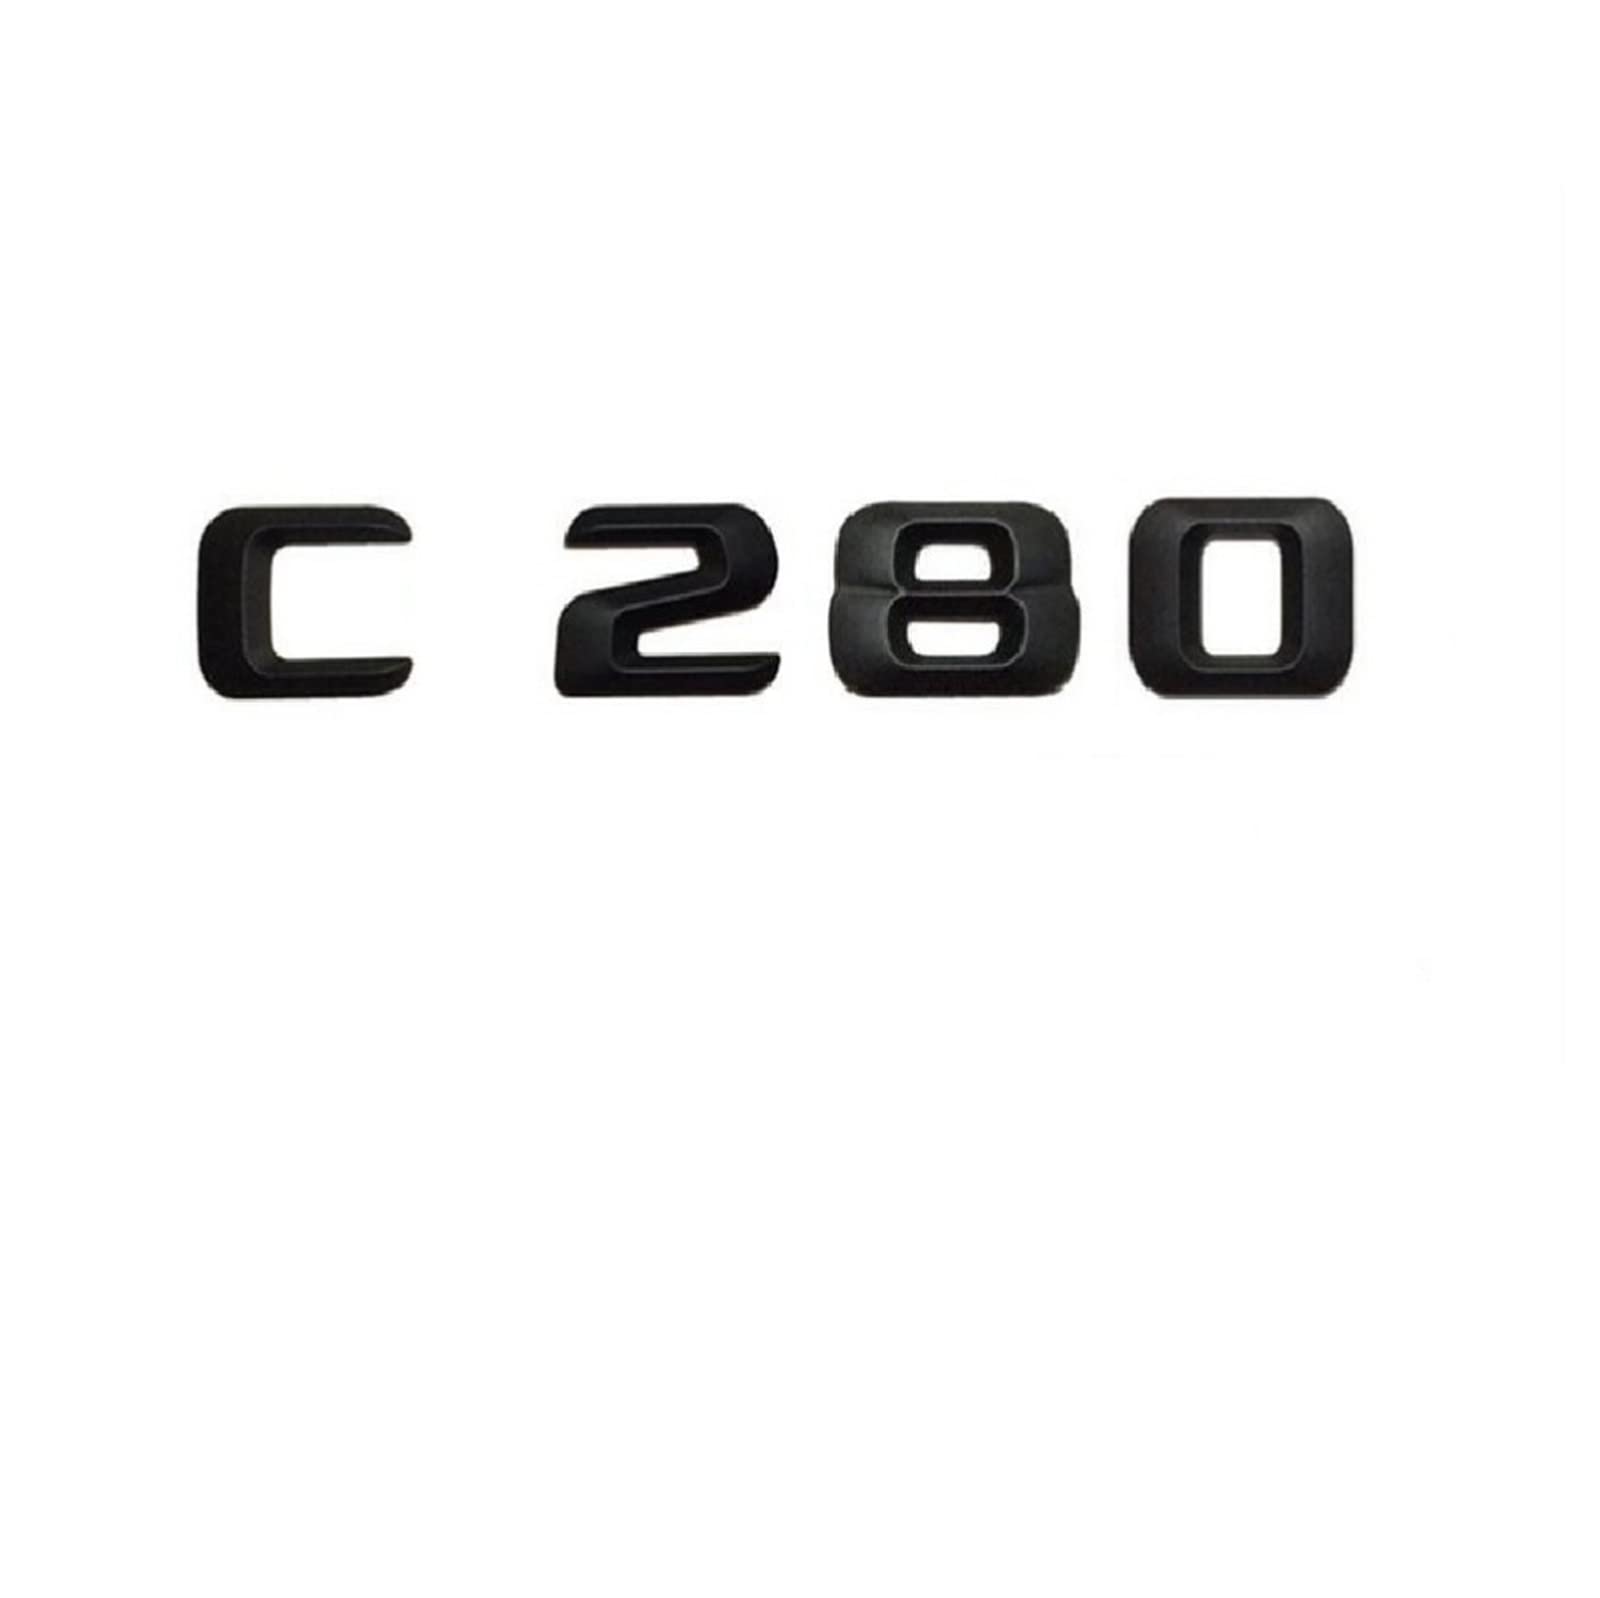 Mattschwarz C 280 "Kofferraum hinten Buchstaben Wörter Nummer Abzeichen Emblem Aufkleber Aufkleber passend for Mercedes Benz C-Klasse C280 von LOTOAK